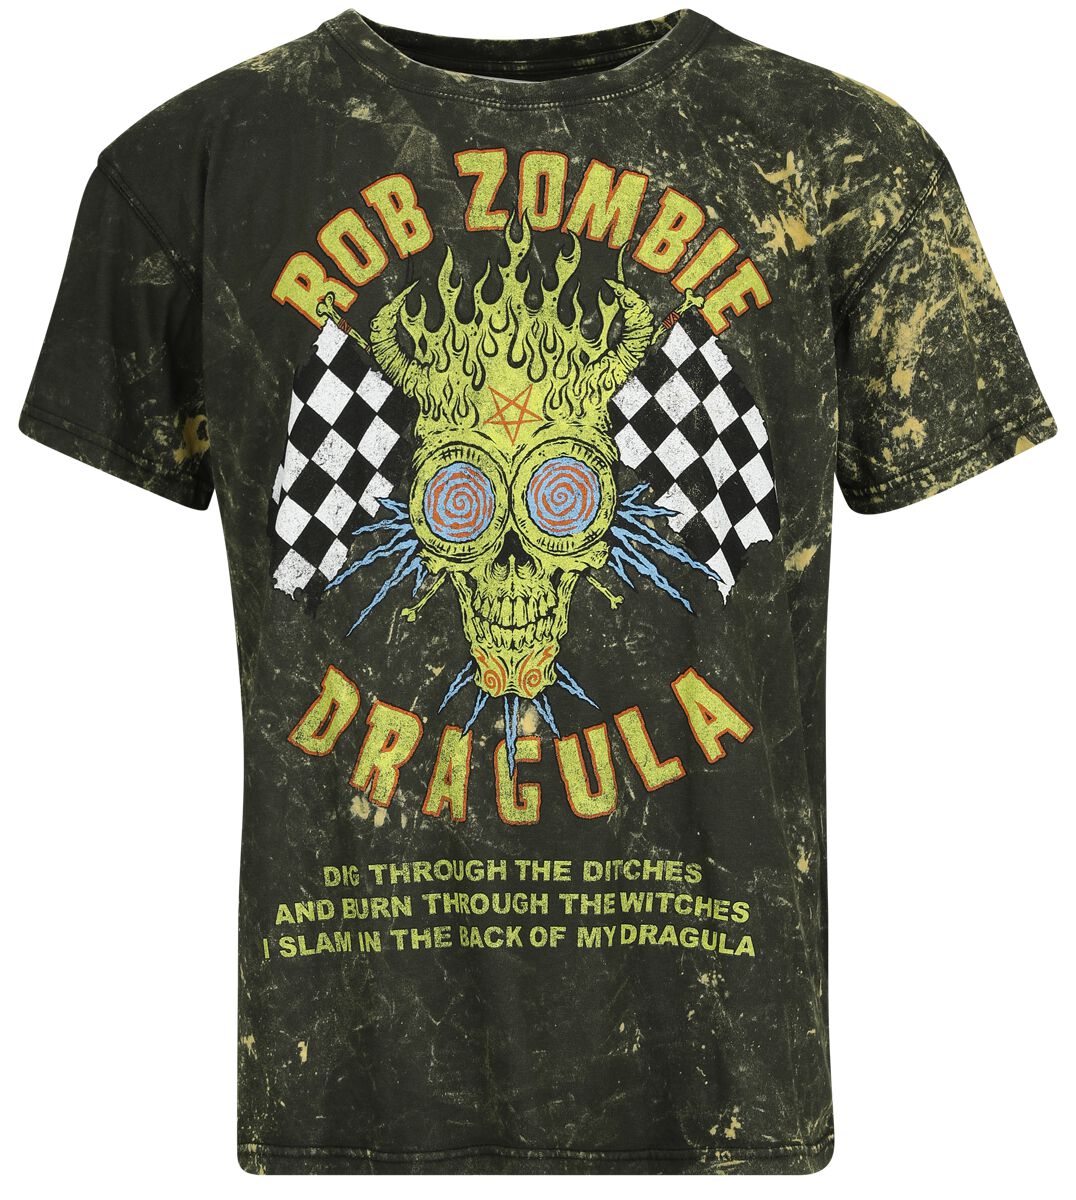 Rob Zombie T-Shirt - Dragula Racing - S bis 4XL - für Männer - Größe M - braun  - Lizenziertes Merchandise! von Rob Zombie